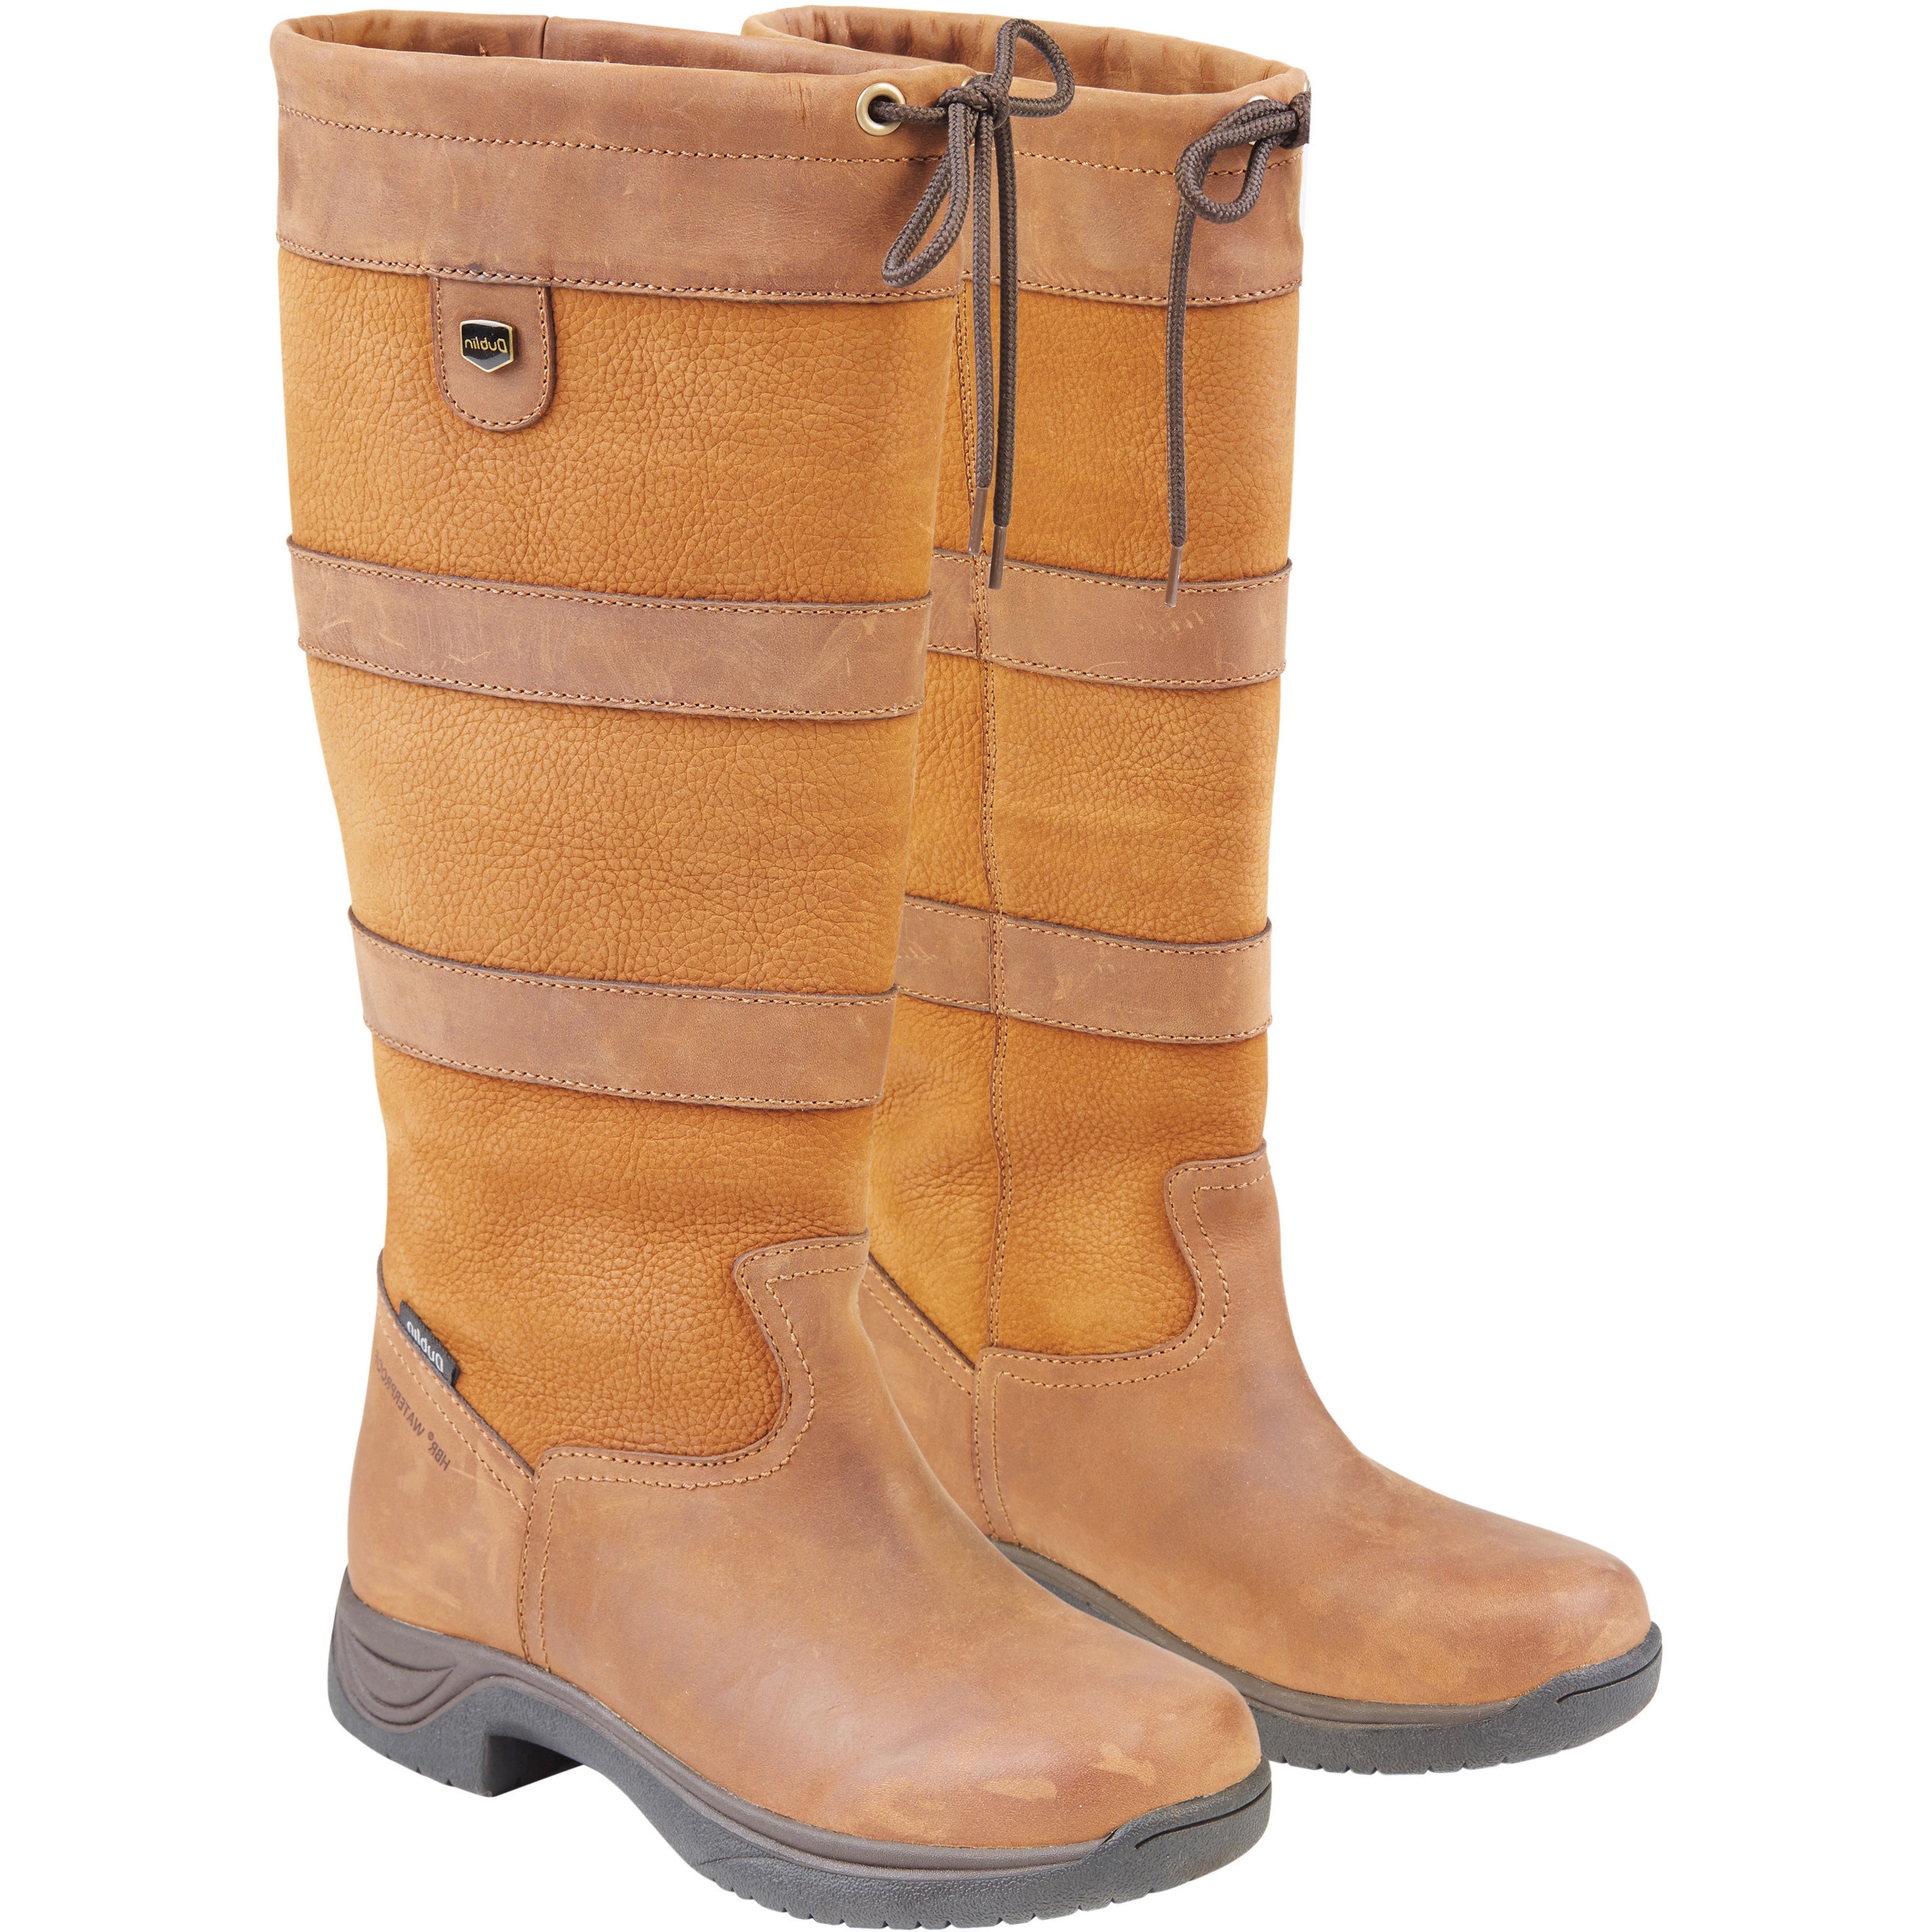 wide rain boots women's shoes